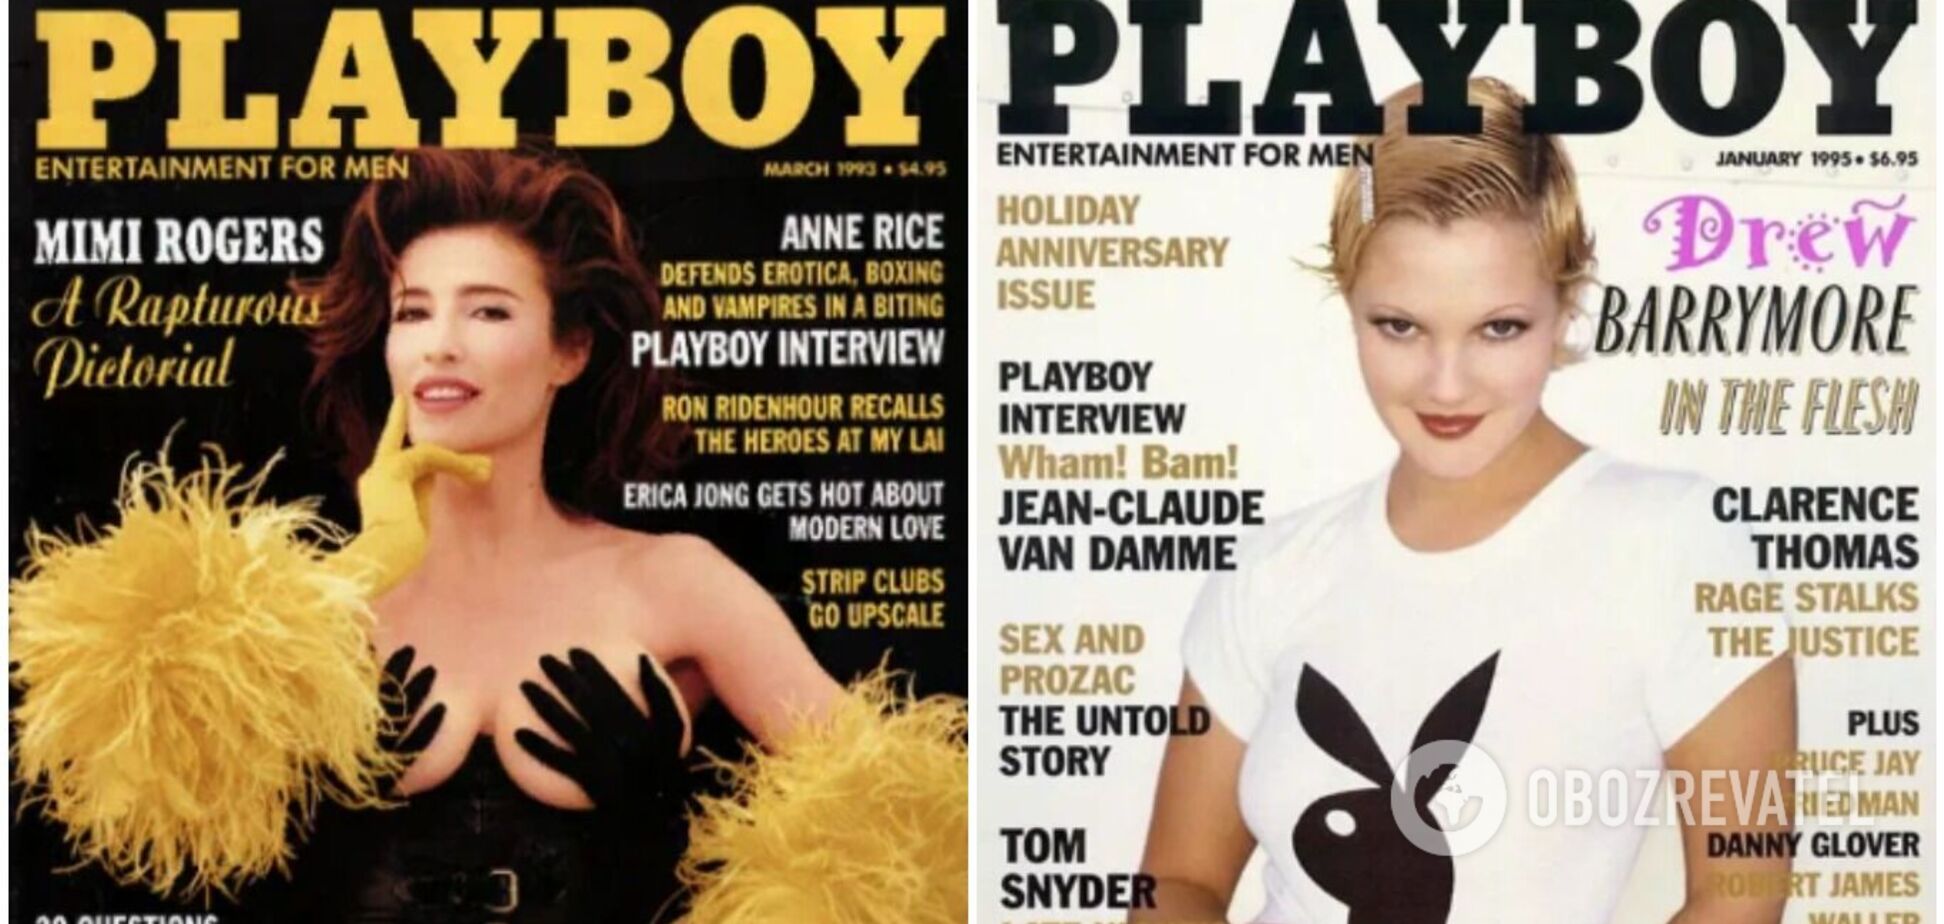 Возраст не жалеет никого! Как изменились звезды Playboy из 90-х, которые сводили с ума миллионы мужчин. Фото тогда и сейчас